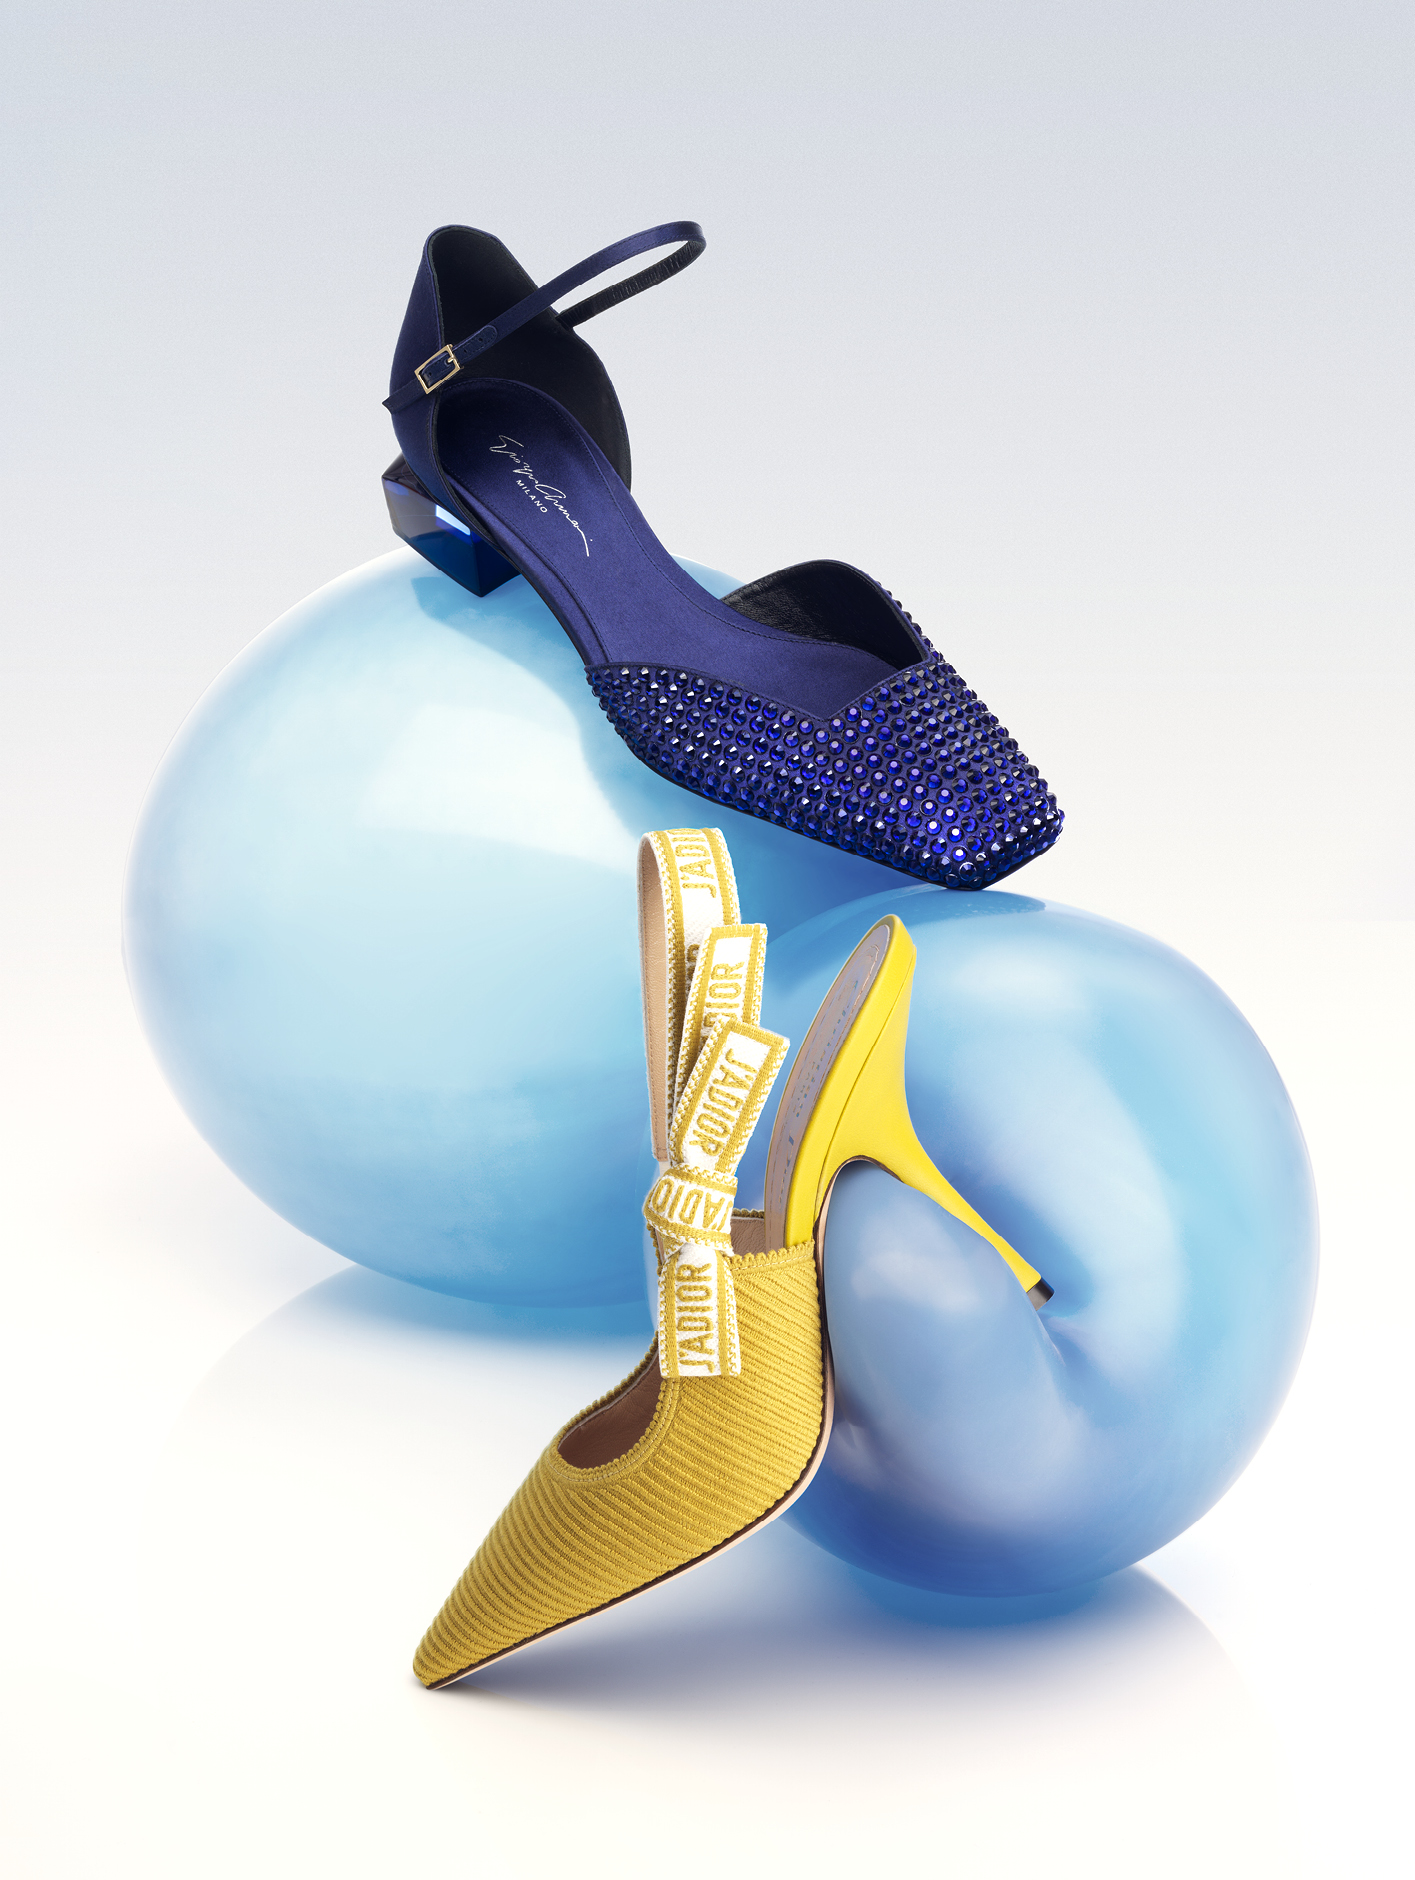 (Top) Giorgio Armani d’Orsay court shoe in satin and rhinestone, £1,250, armani.com; J’adior slingback pump in embroidered cotton, £860, dior.com